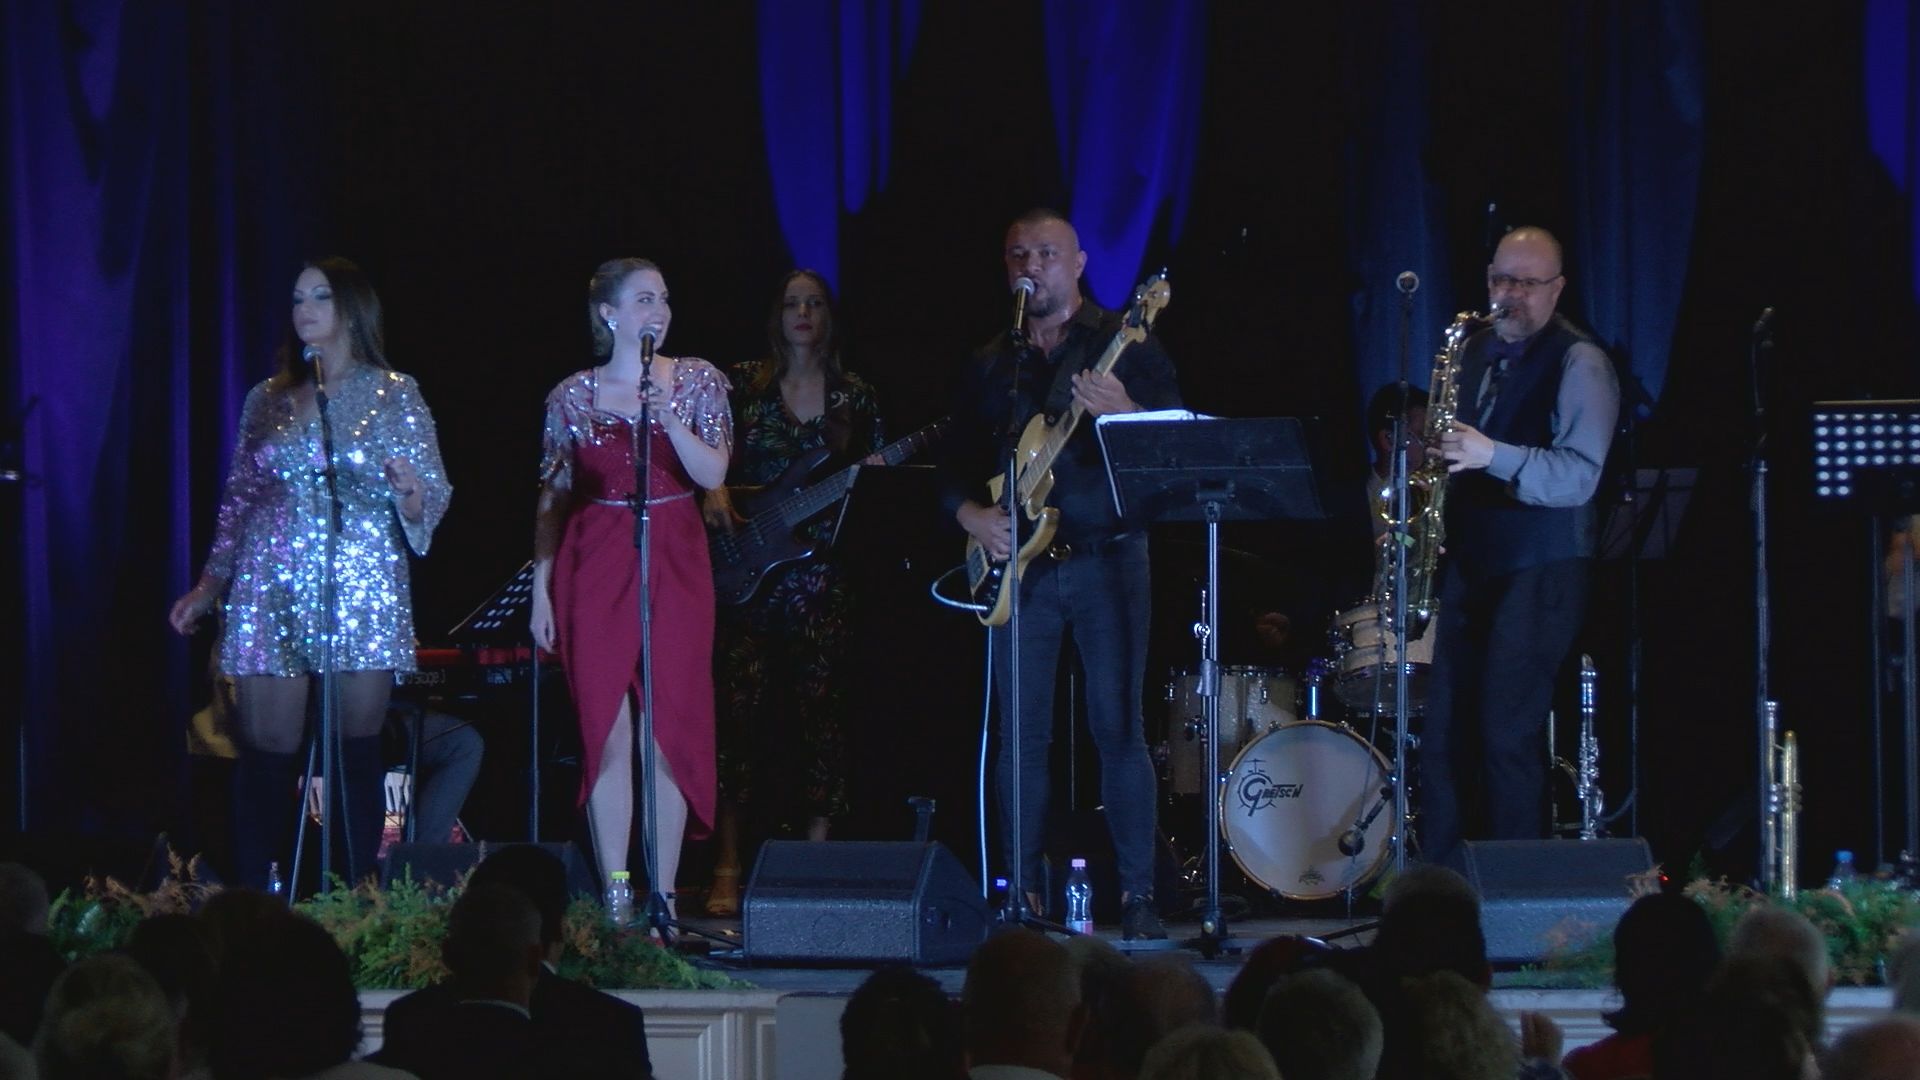 Fergeteges koncerttel ünnepelt az öt éves Füred Dixieland Band